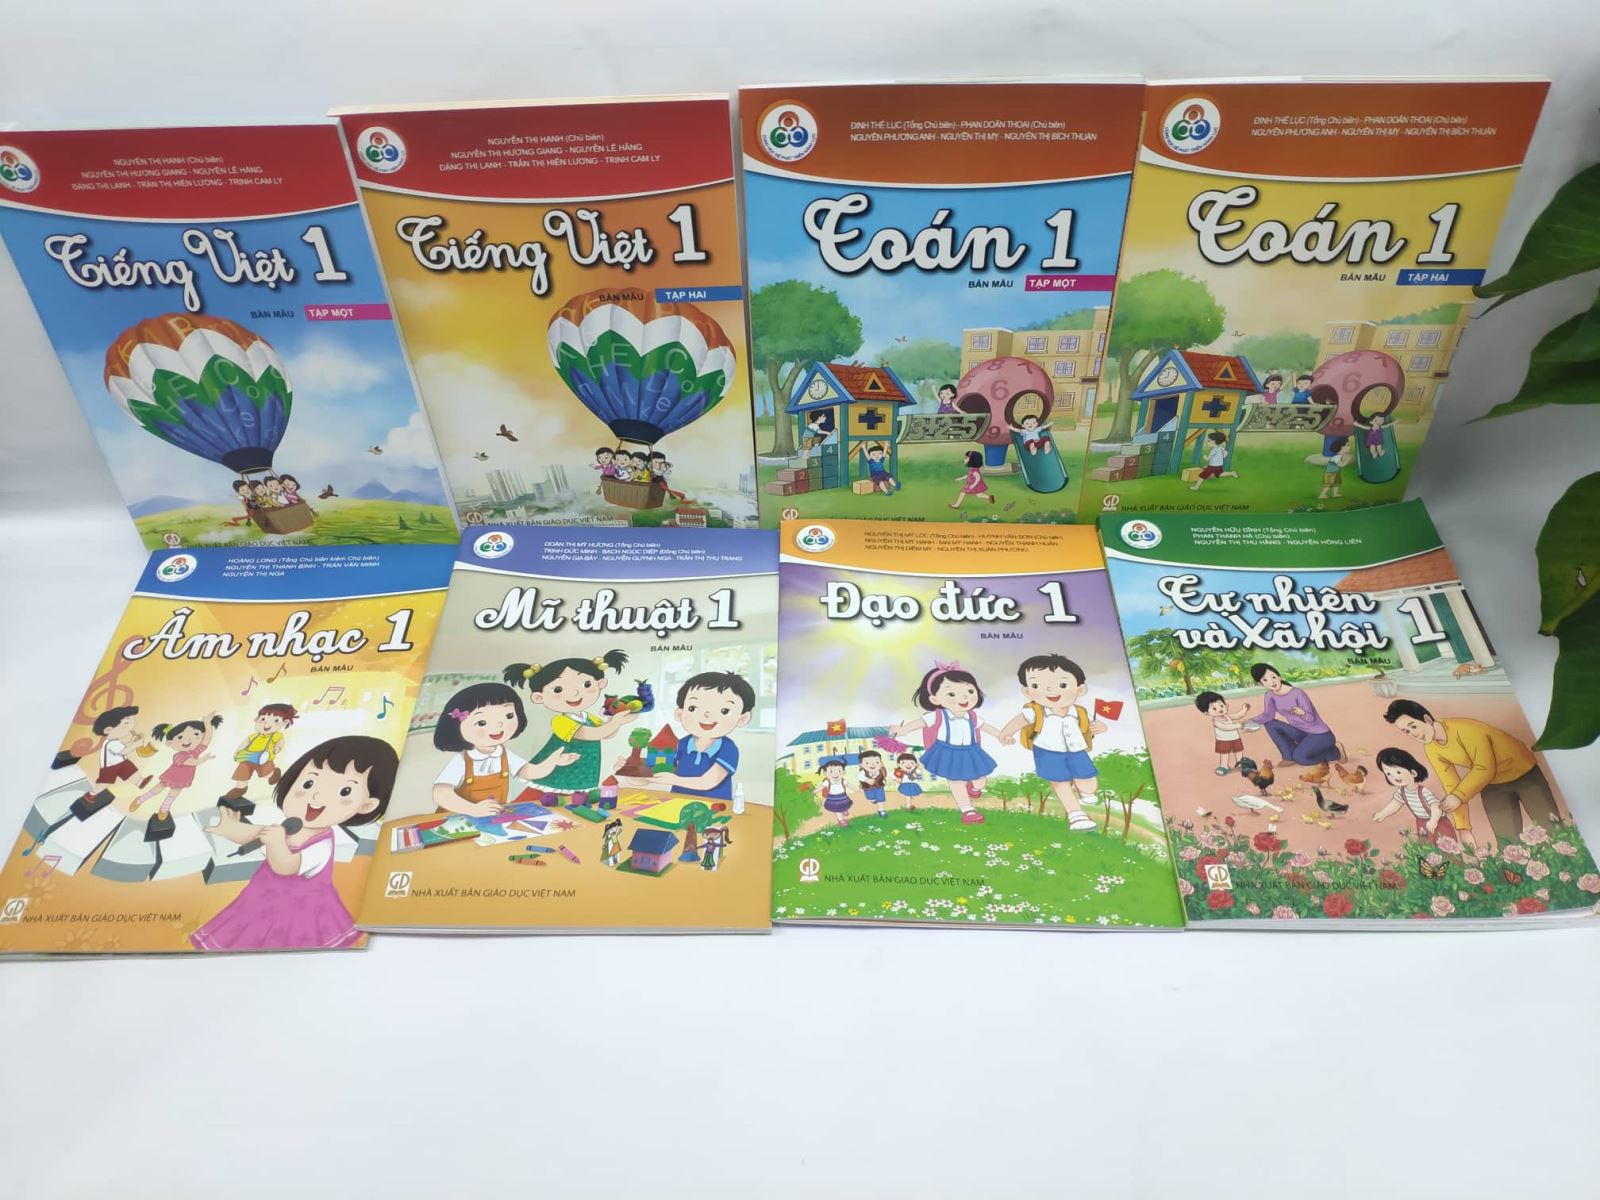 Bộ sách "Cùng học để phát triển năng lực" - bộ sách giáo khoa mới lớp 1 thay đổi nền giáo dục Việt Nam